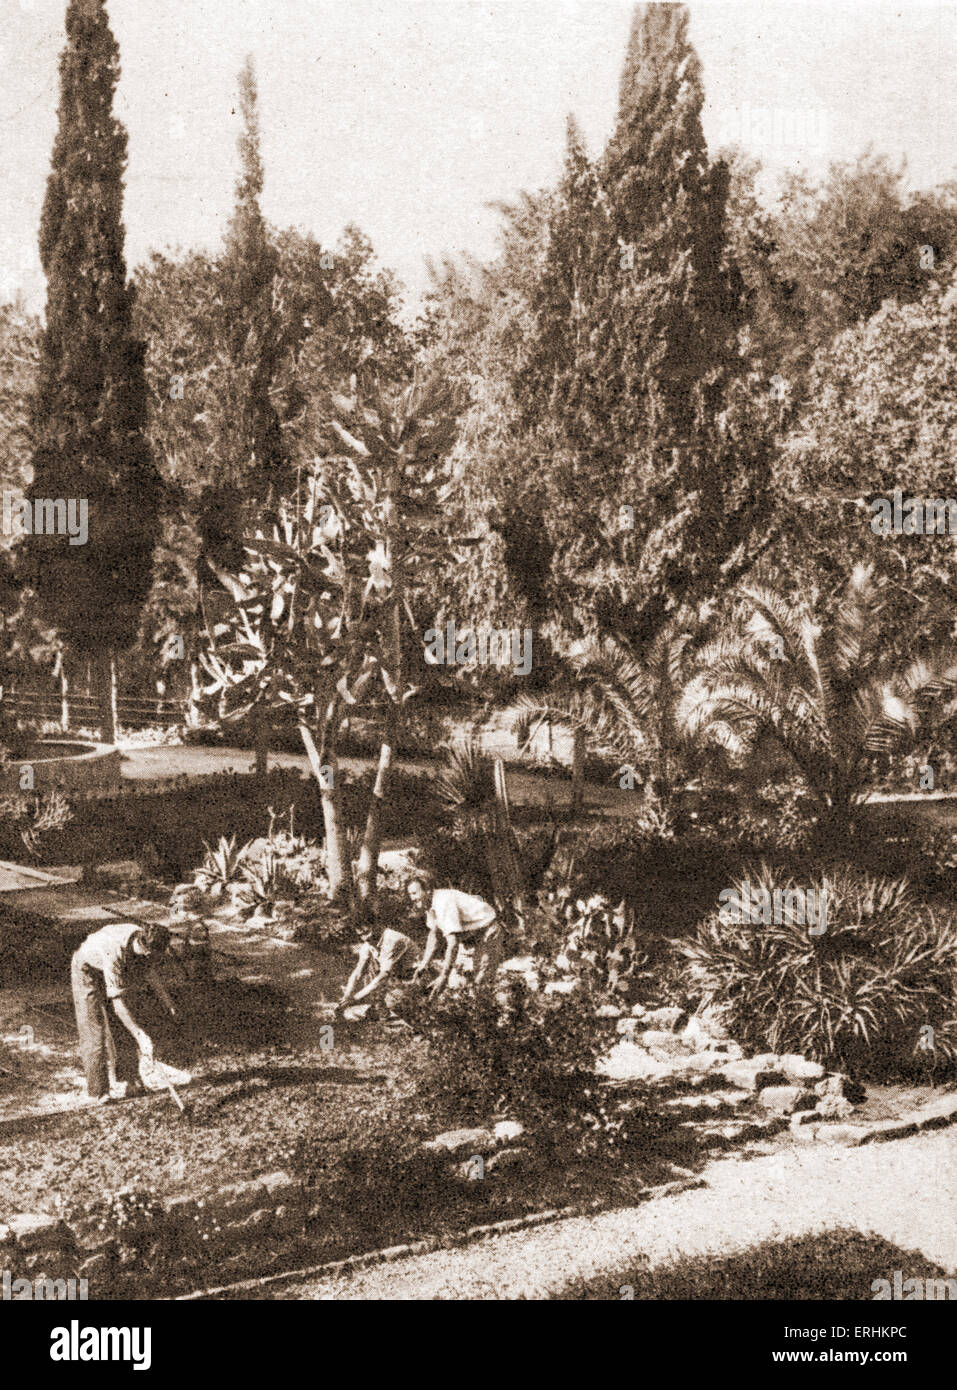 Palestine / Israel - early settlers / pioneers  tending their gardens. Stock Photo